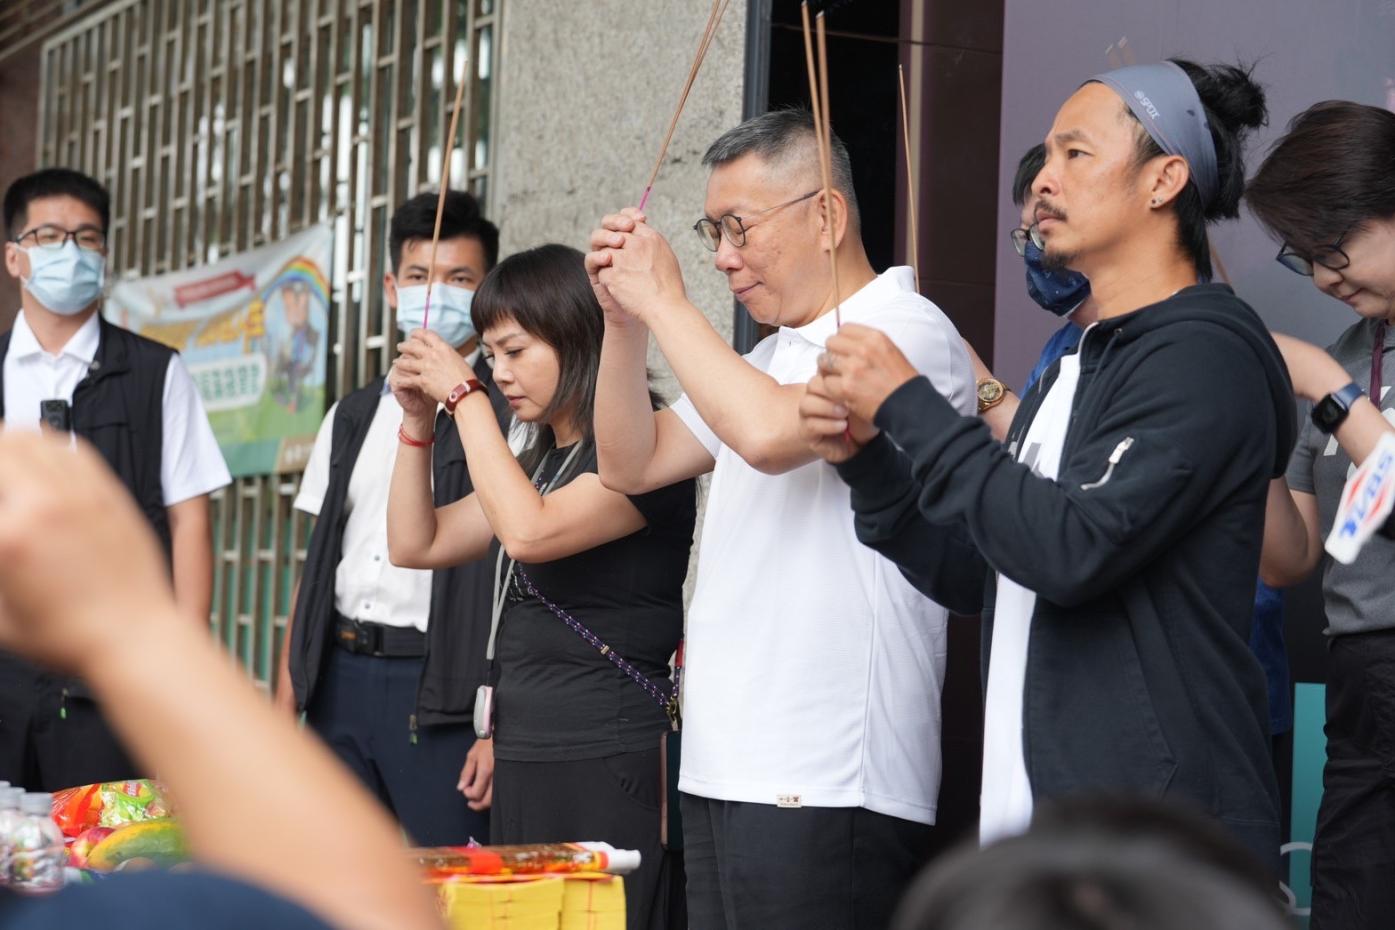 台灣民眾黨主席柯文哲(白衣者)在彩排前拜拜祈求活動順利。台灣民眾黨提供